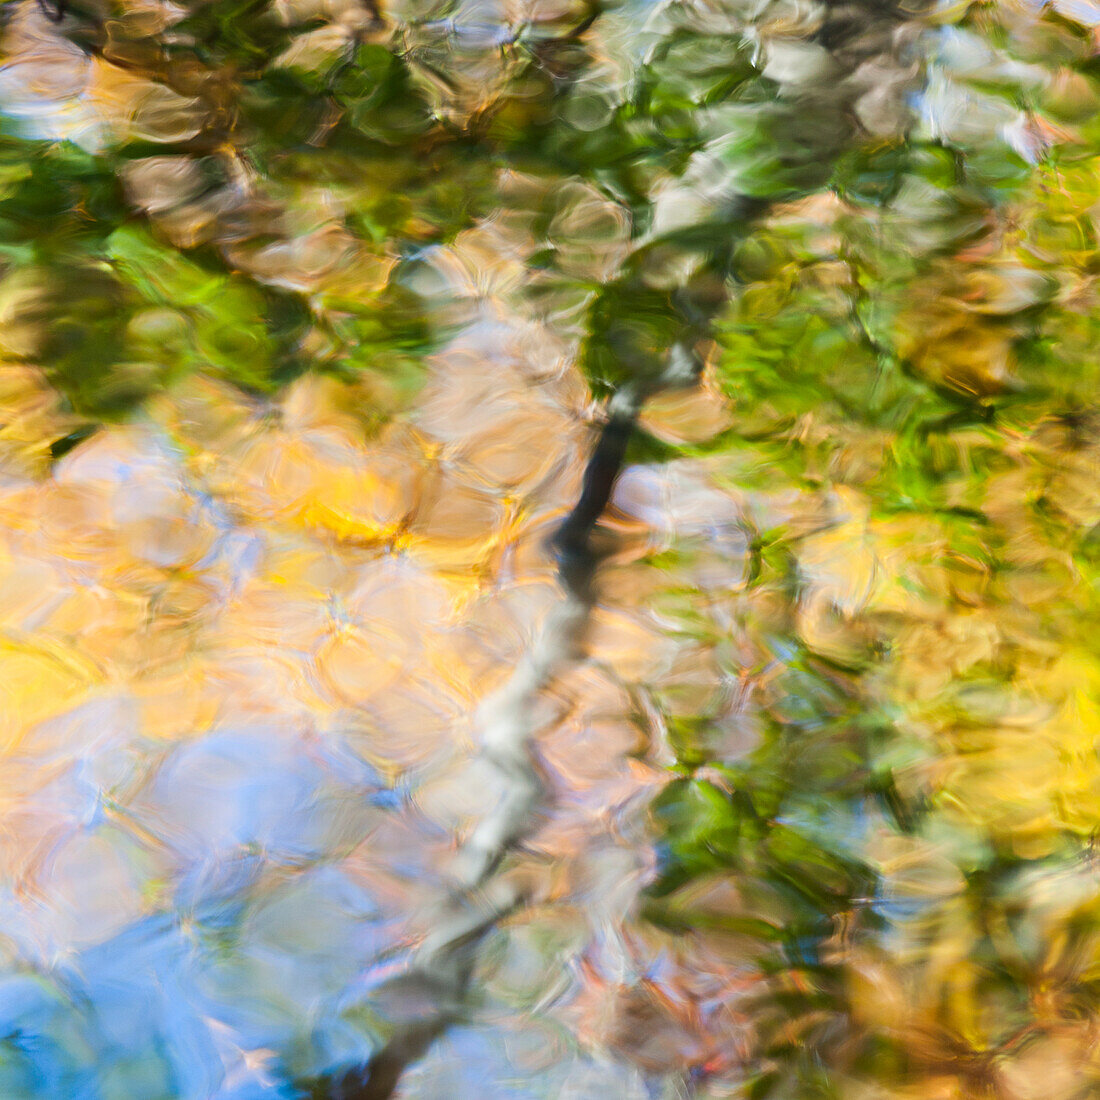 Herbstfarben spiegeln sich im gekräuselten Wasser eines Teiches, der wie ein Gemälde aussieht.